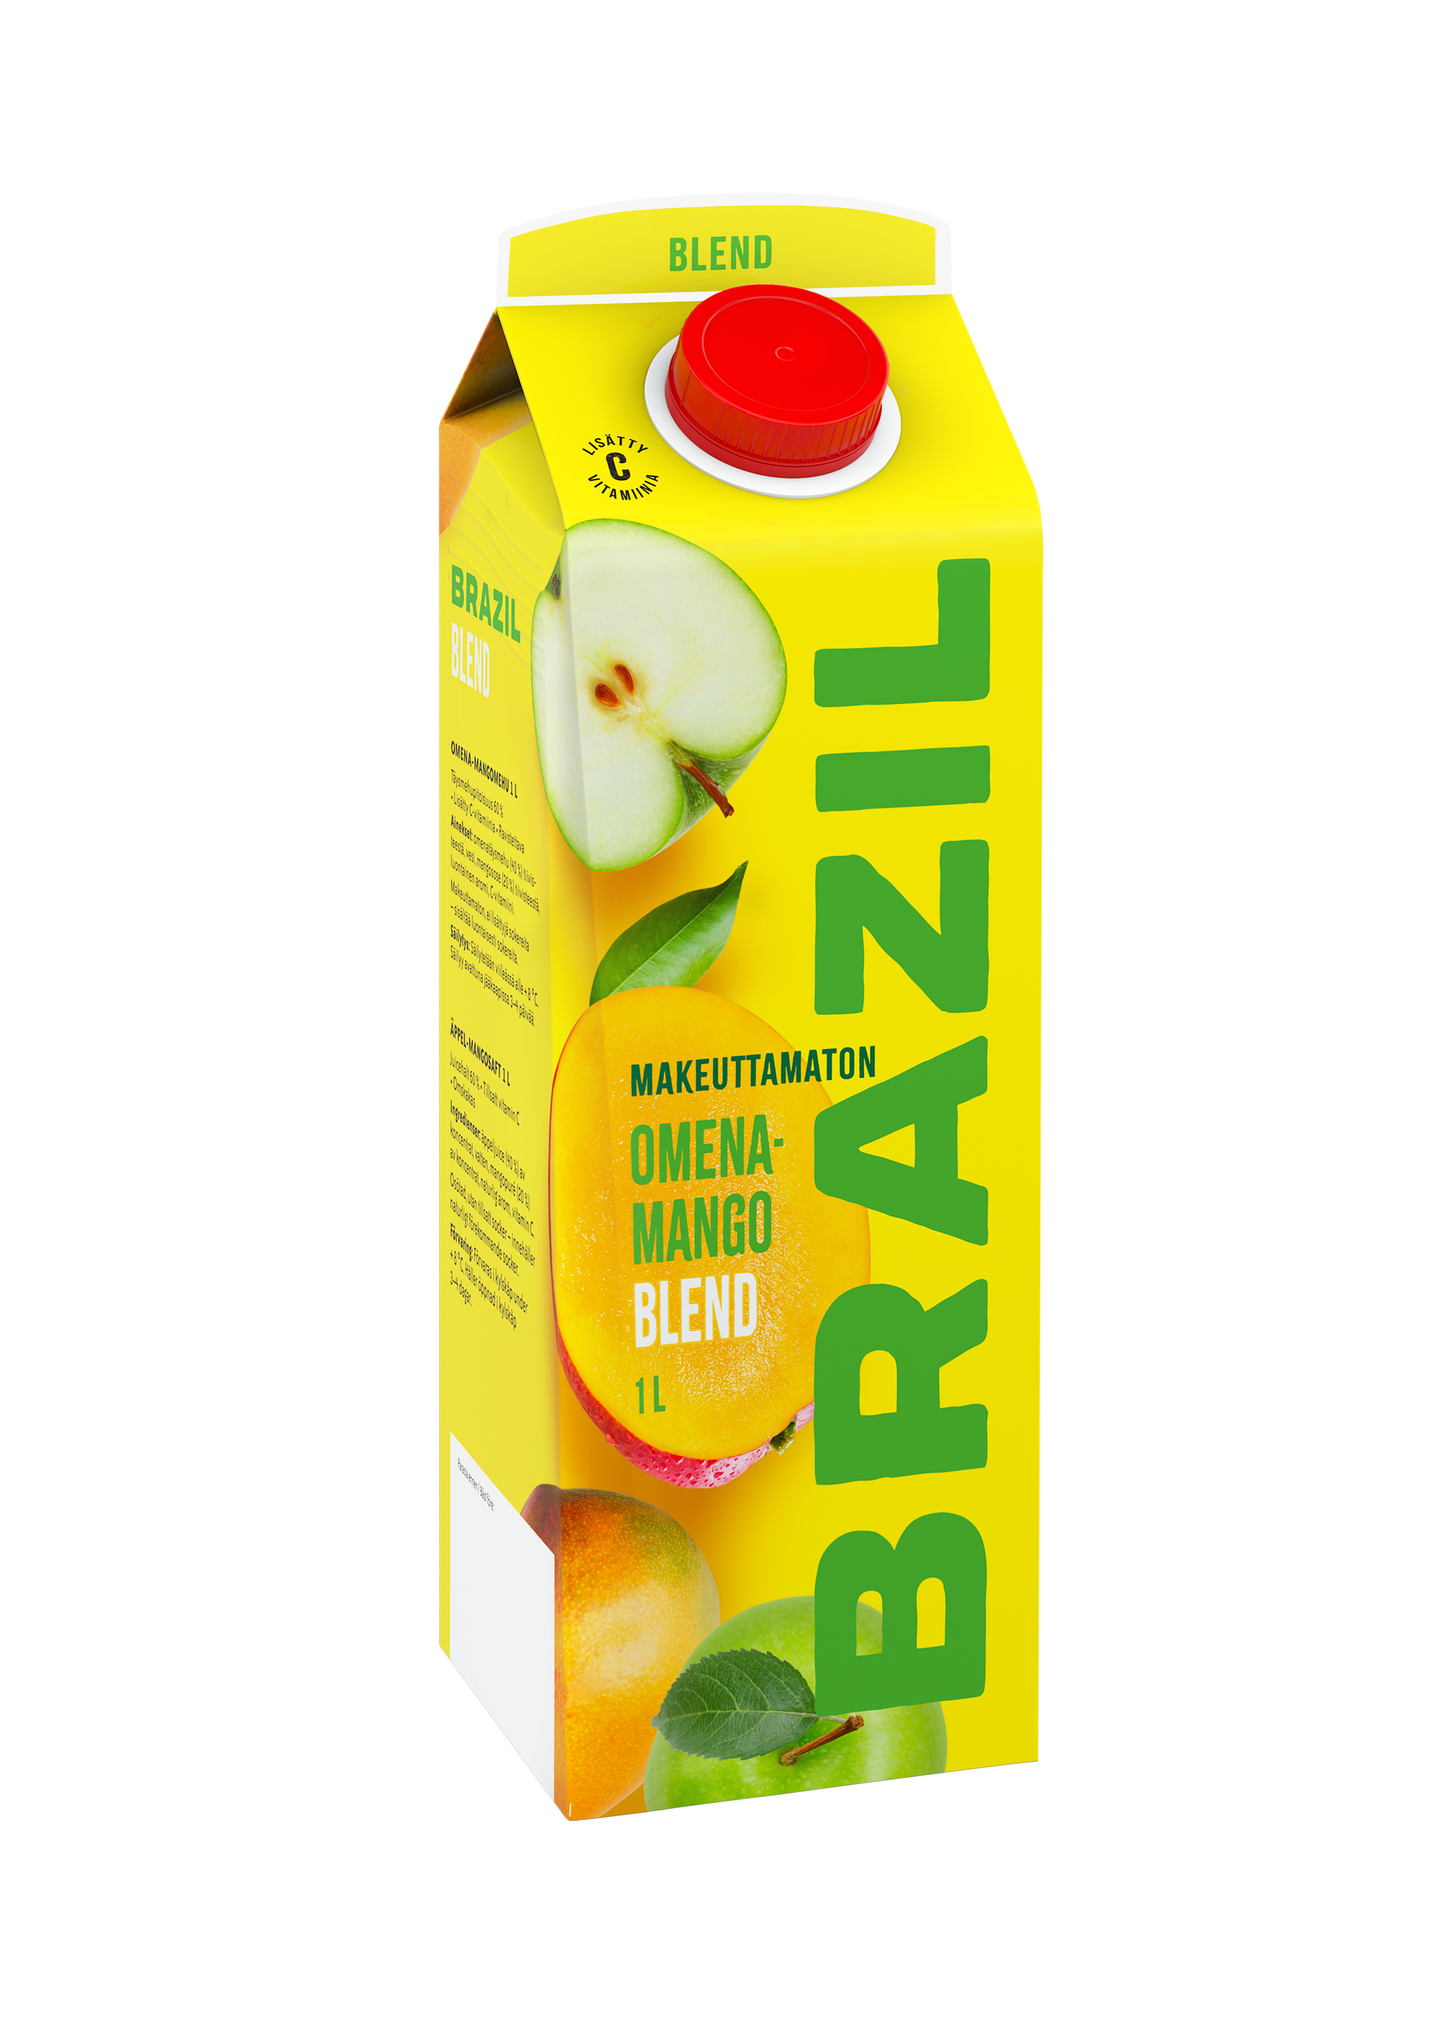 Brazil Blend mehu 1l omena-mango